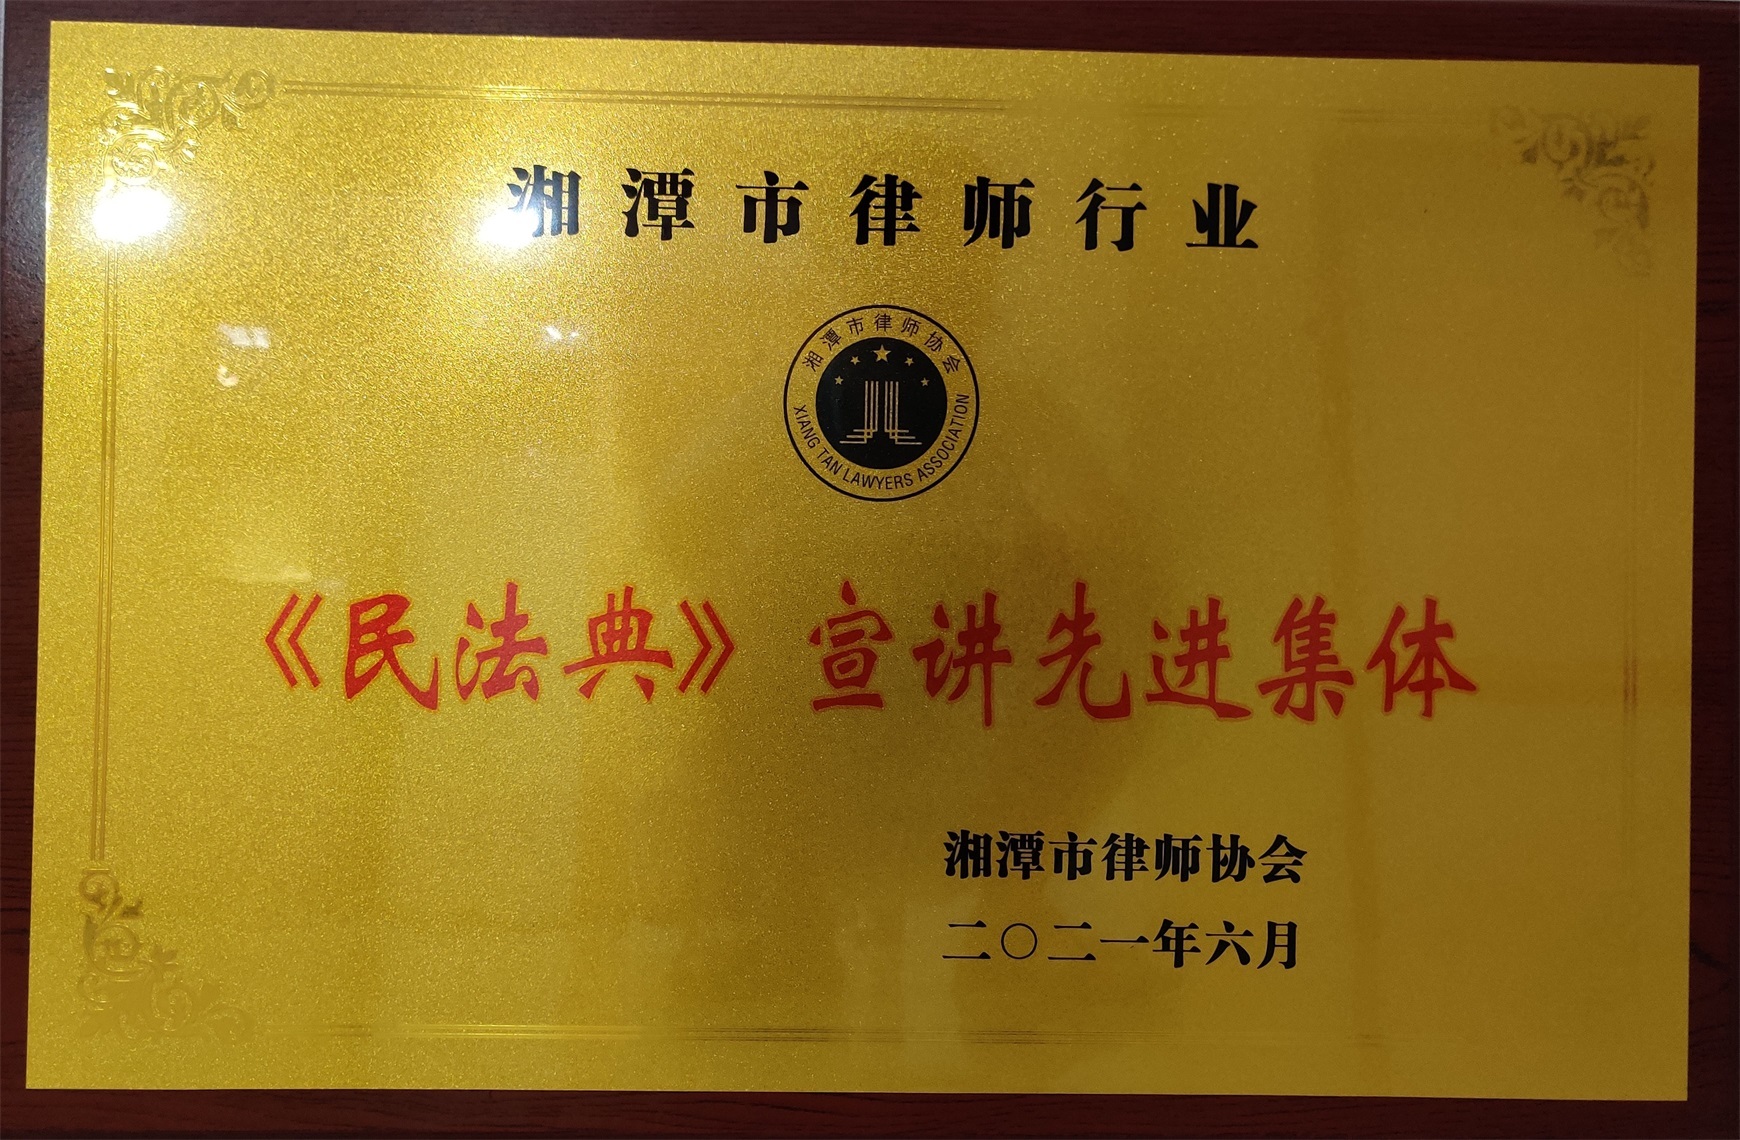 2021年6月被湘潭市律协评为《民法典》宣讲先进集体